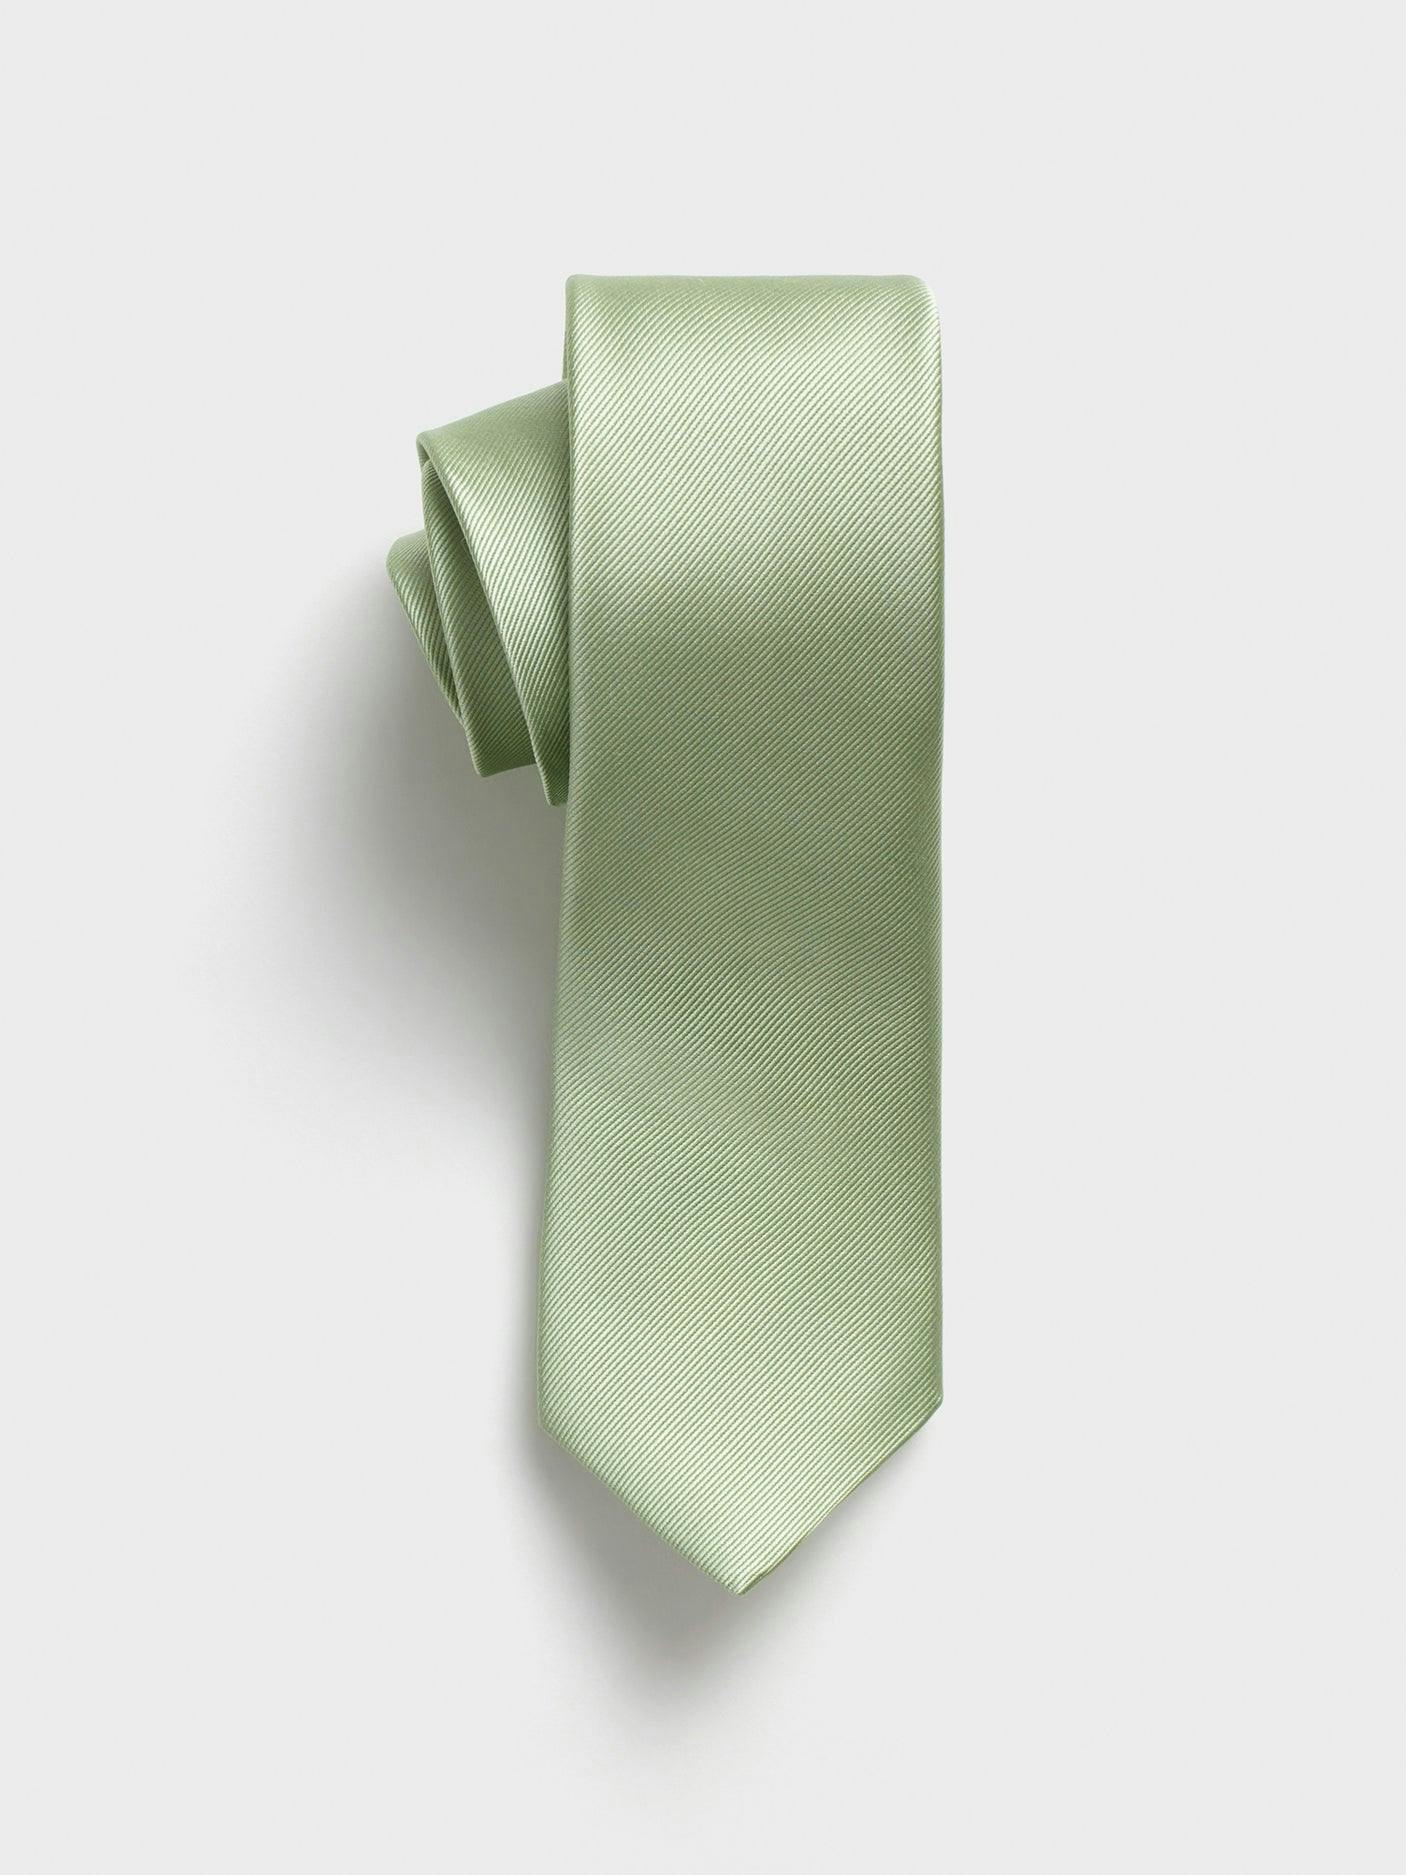 Pale Seafoam Silk Necktie